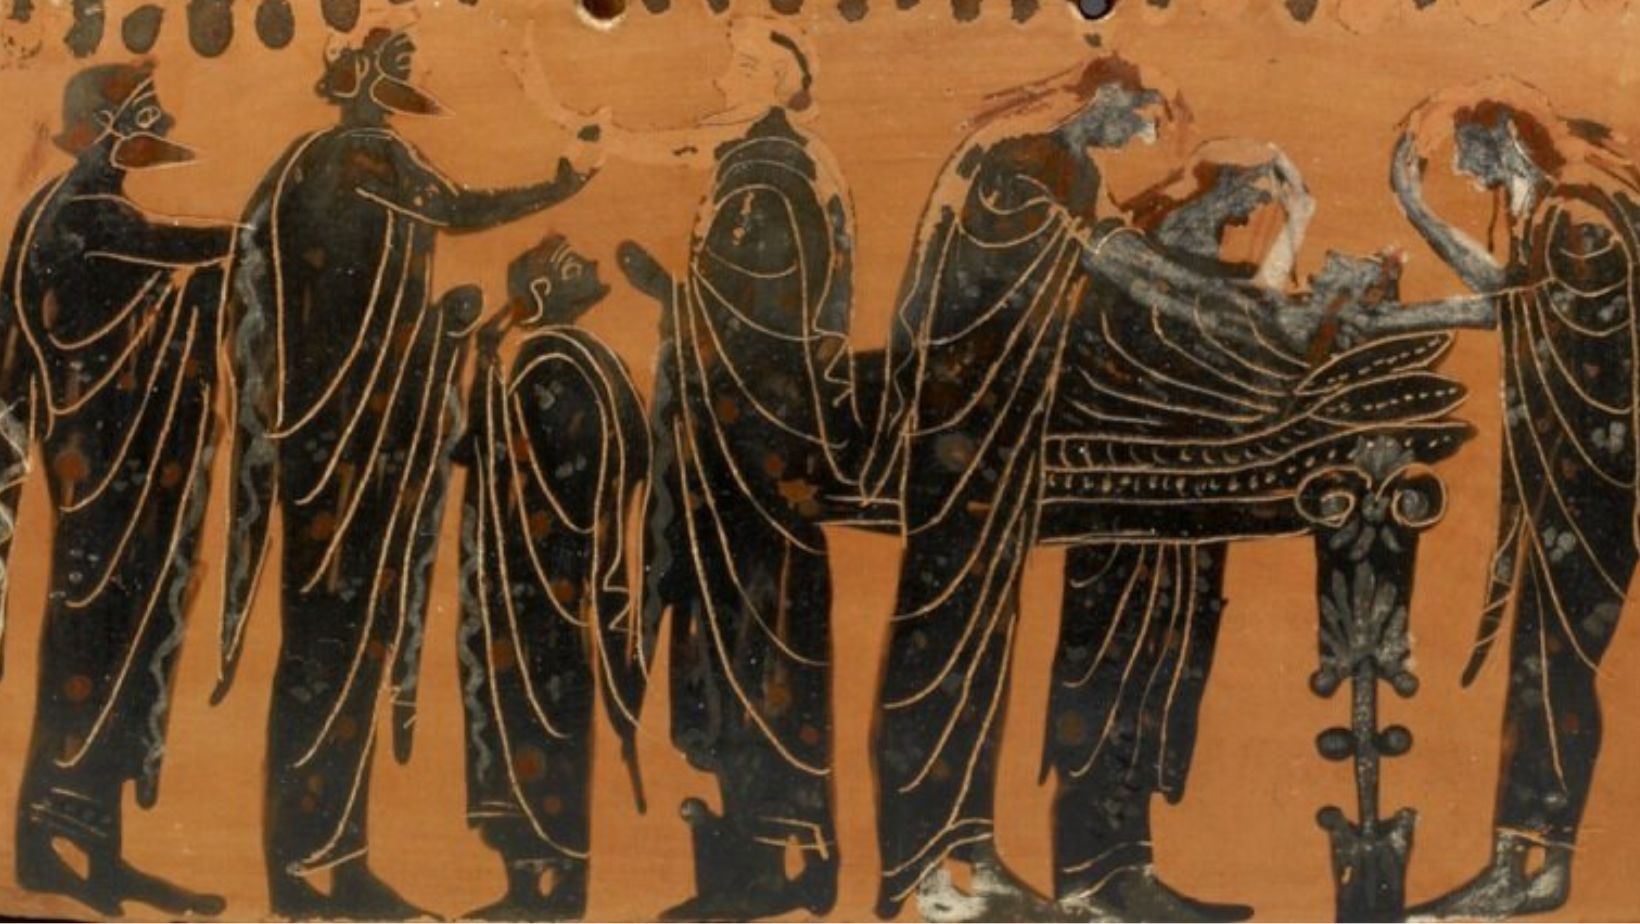 Greek Mythology Afterlife Beliefs, B.C., conservation treatment